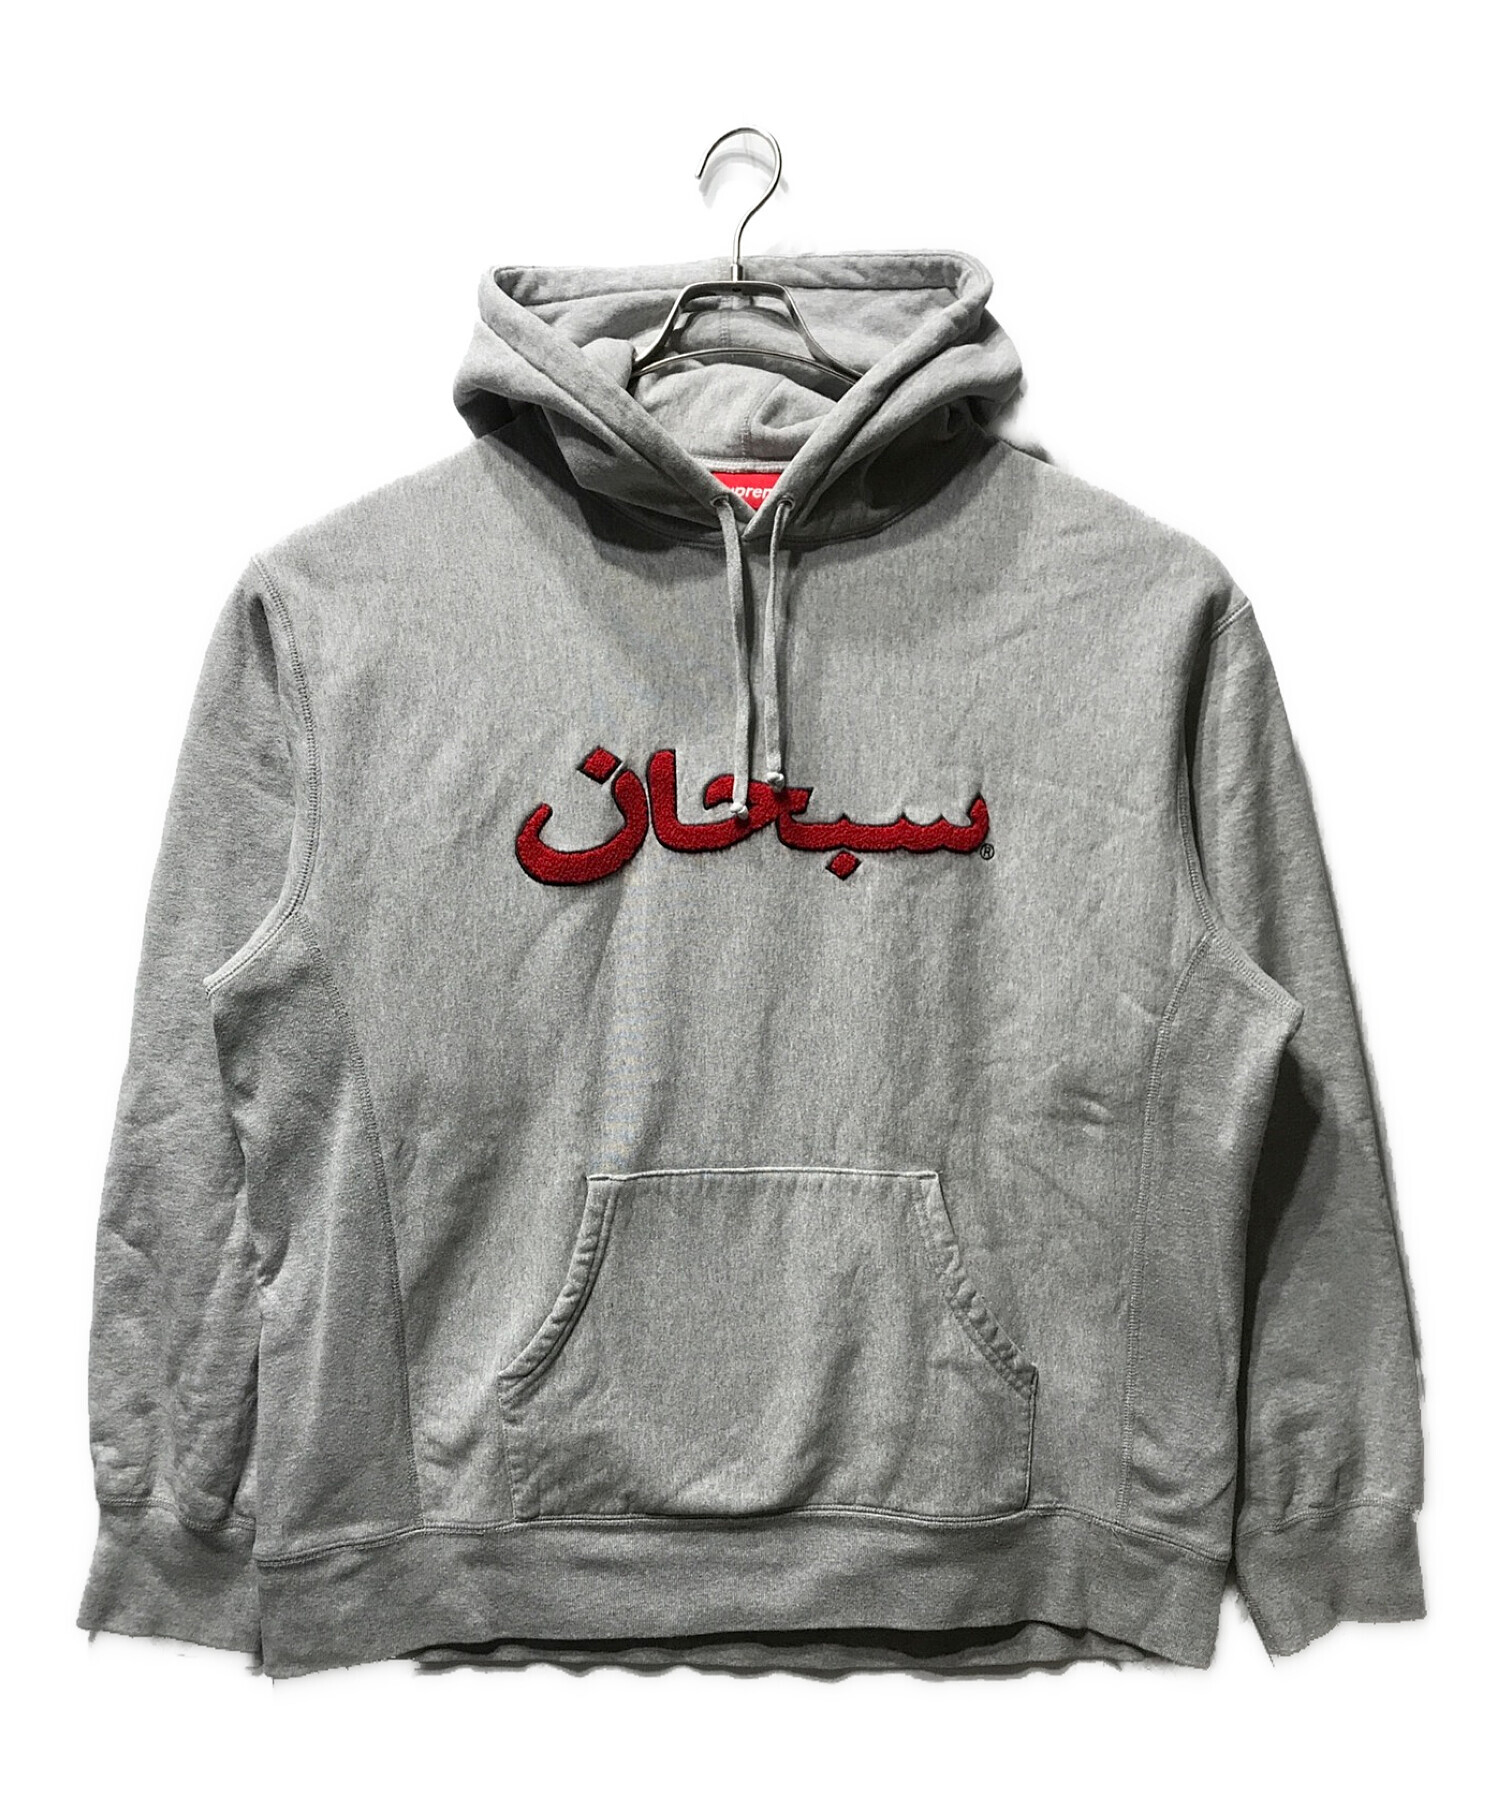 SUPREME (シュプリーム) Arabic Logo Hooded Sweatshirt アラビク ロゴ フーディー スウェット パーカー グレー  サイズ:XL